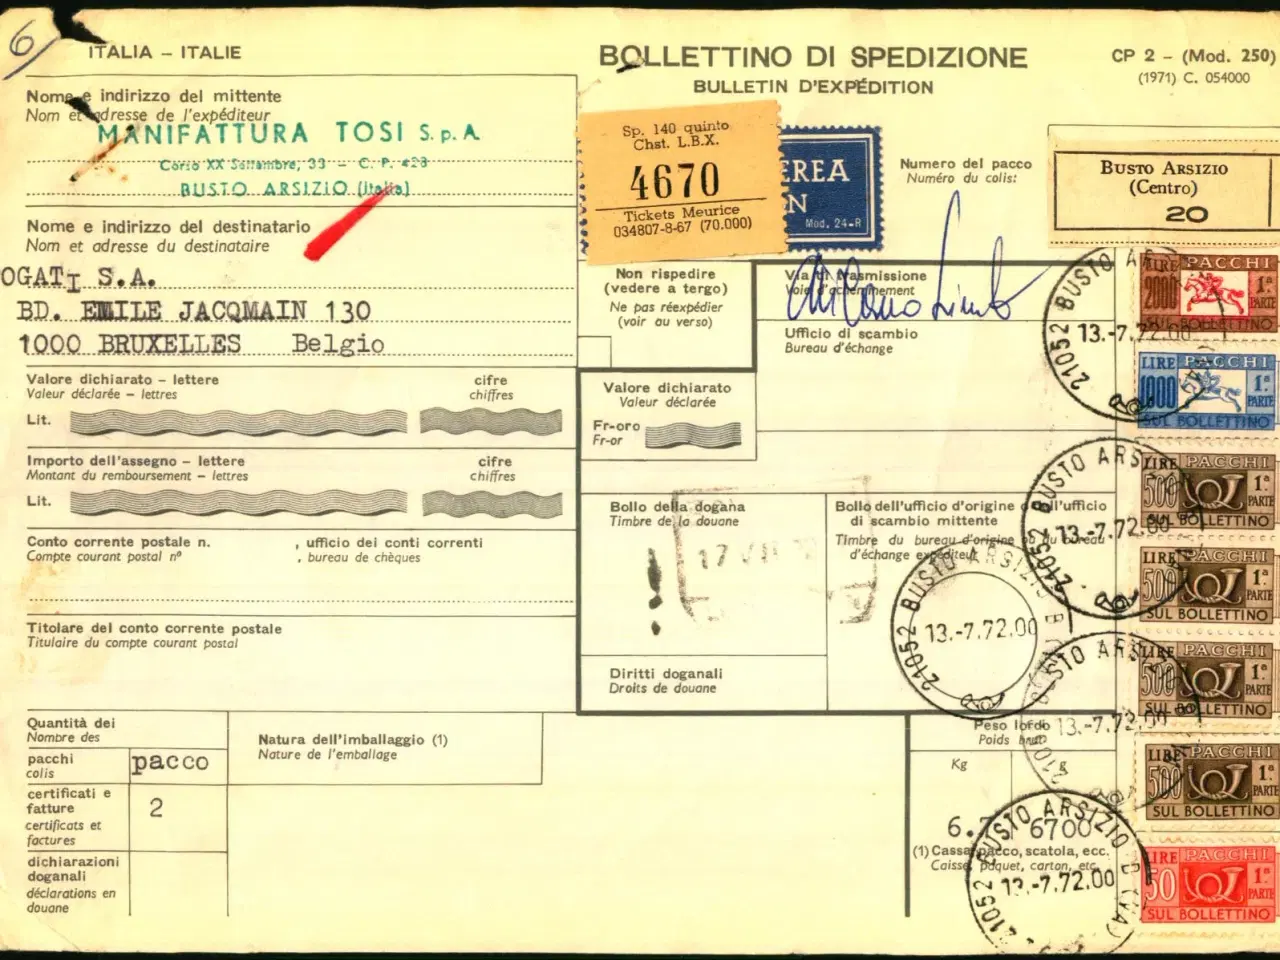 Billede 1 - Luftpost - Adressekort for luftpakke fra Italien til Belgien - 13 - 7 - 72